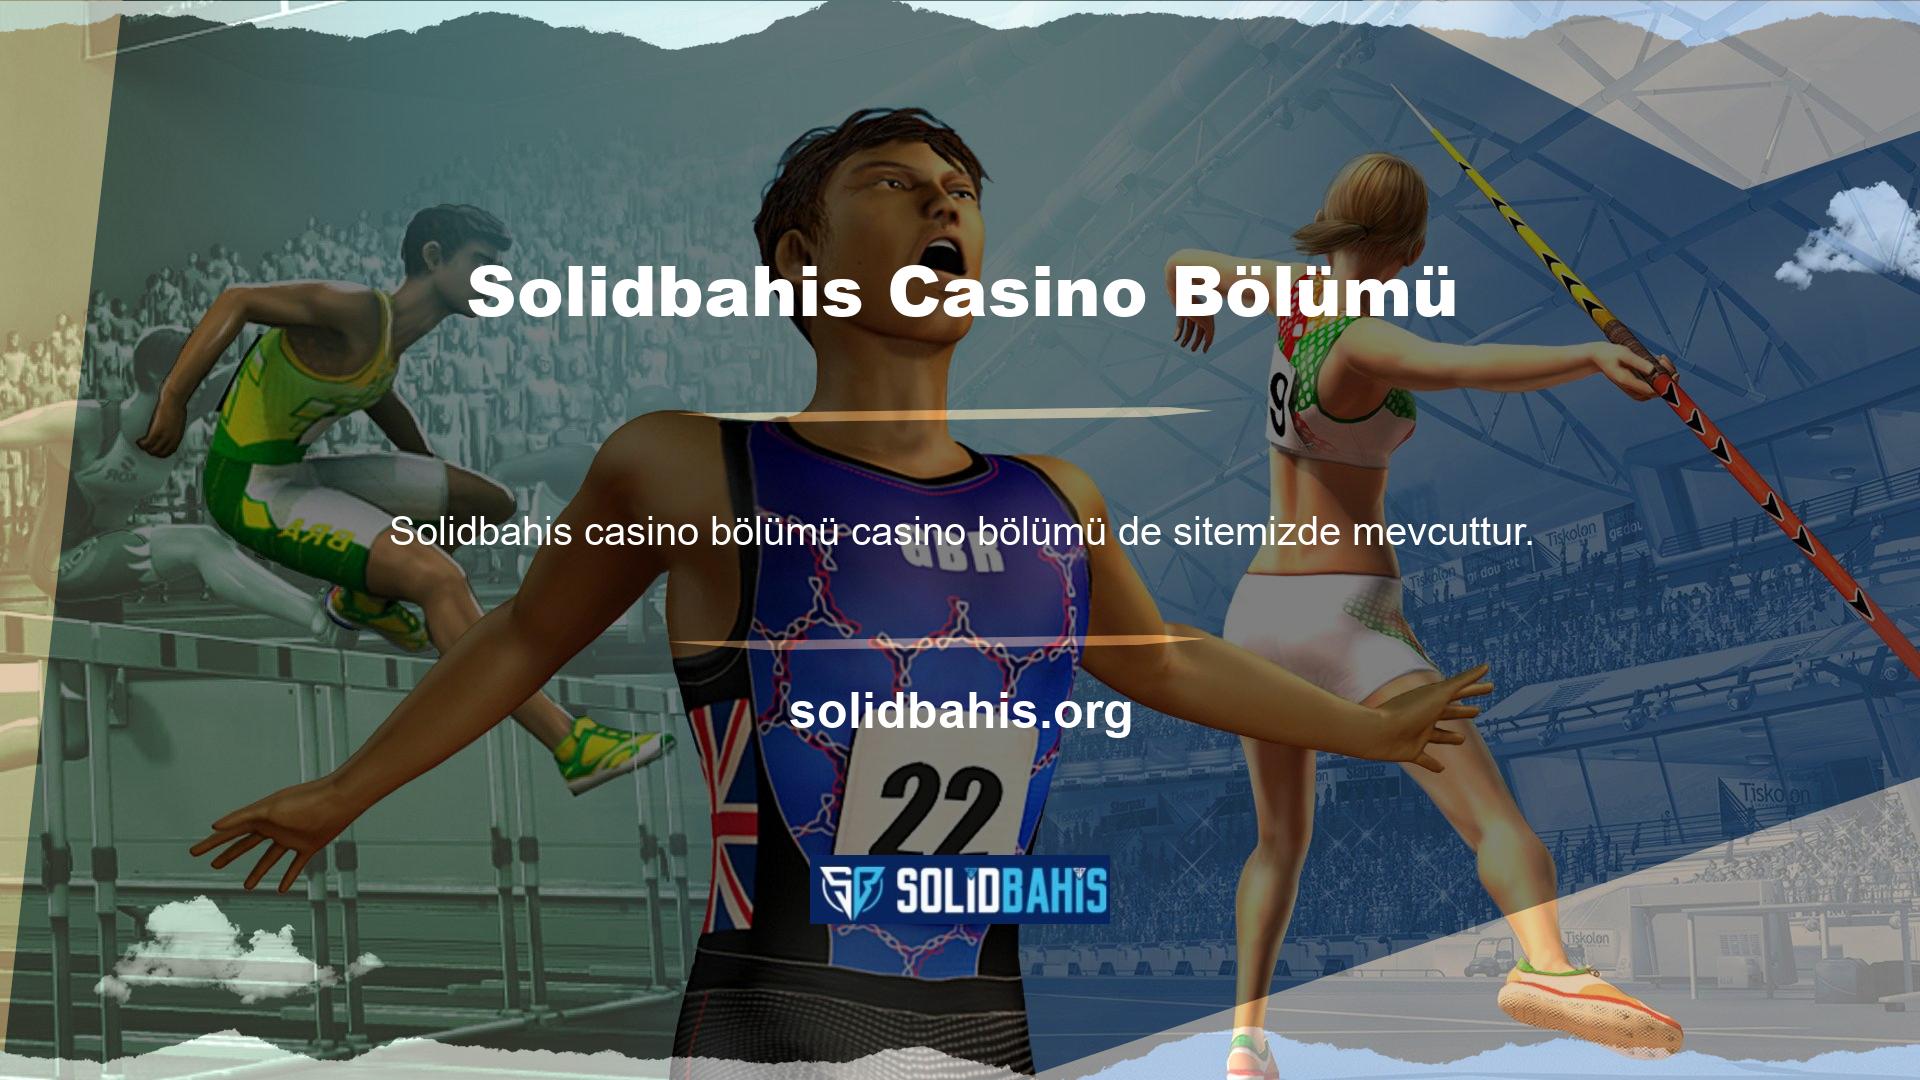 Solidbahis casino oyunları çeşitli altyapılar aracılığıyla müşterilere ulaştırılmaktadır